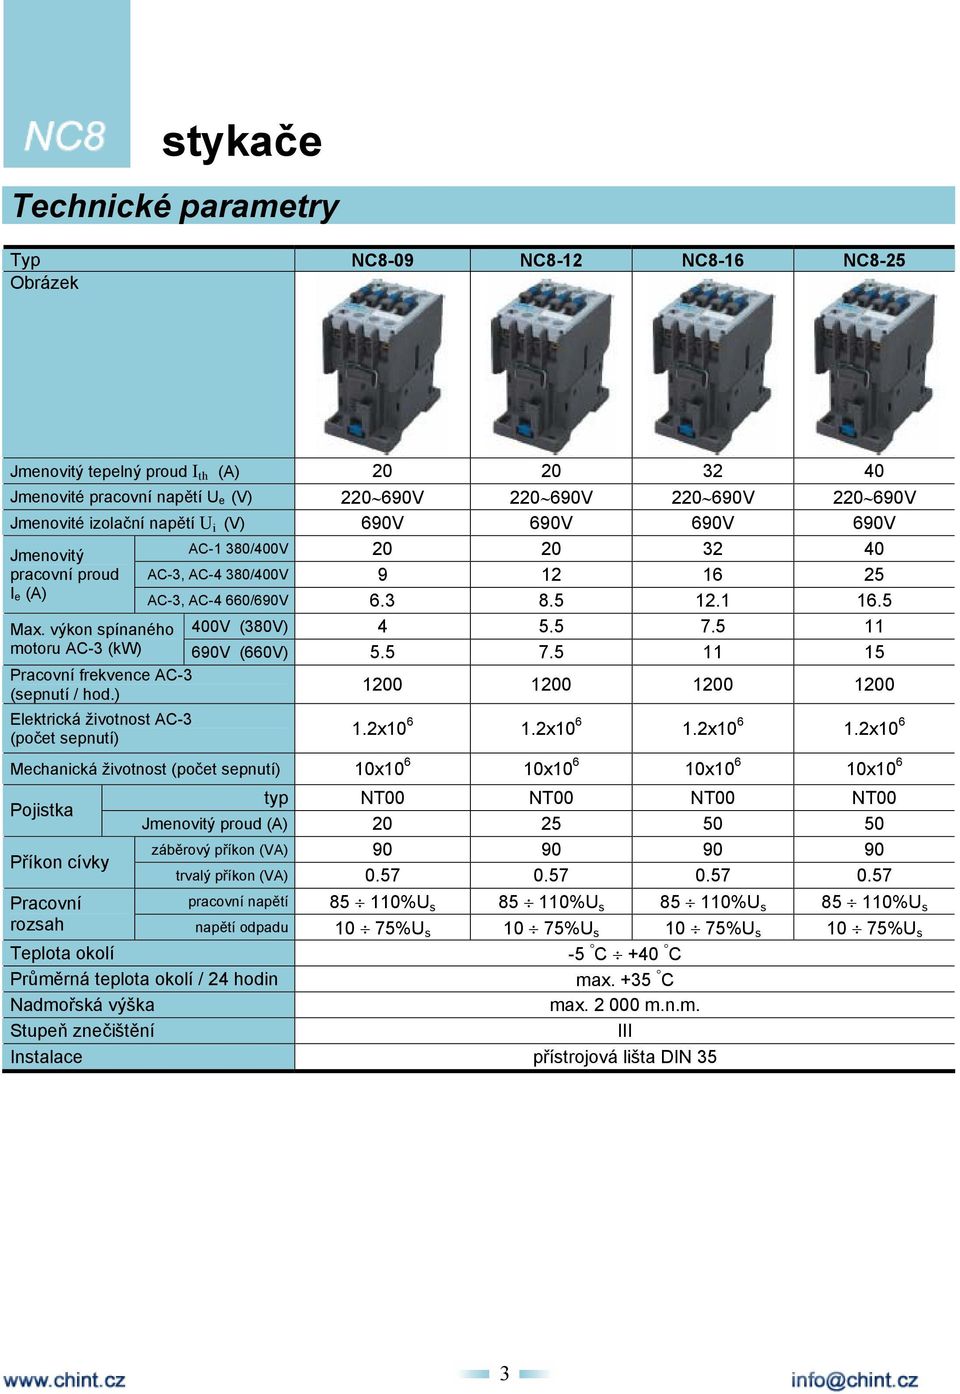 výkon spínaného motoru AC-3 (kw) 690V (660V) 5.5 7.5 11 15 Pracovní frekvence AC-3 (sepnutí / hod.) Elektrická životnost AC-3 (počet sepnutí) 1200 1200 1200 1200 1.2x10 6 1.